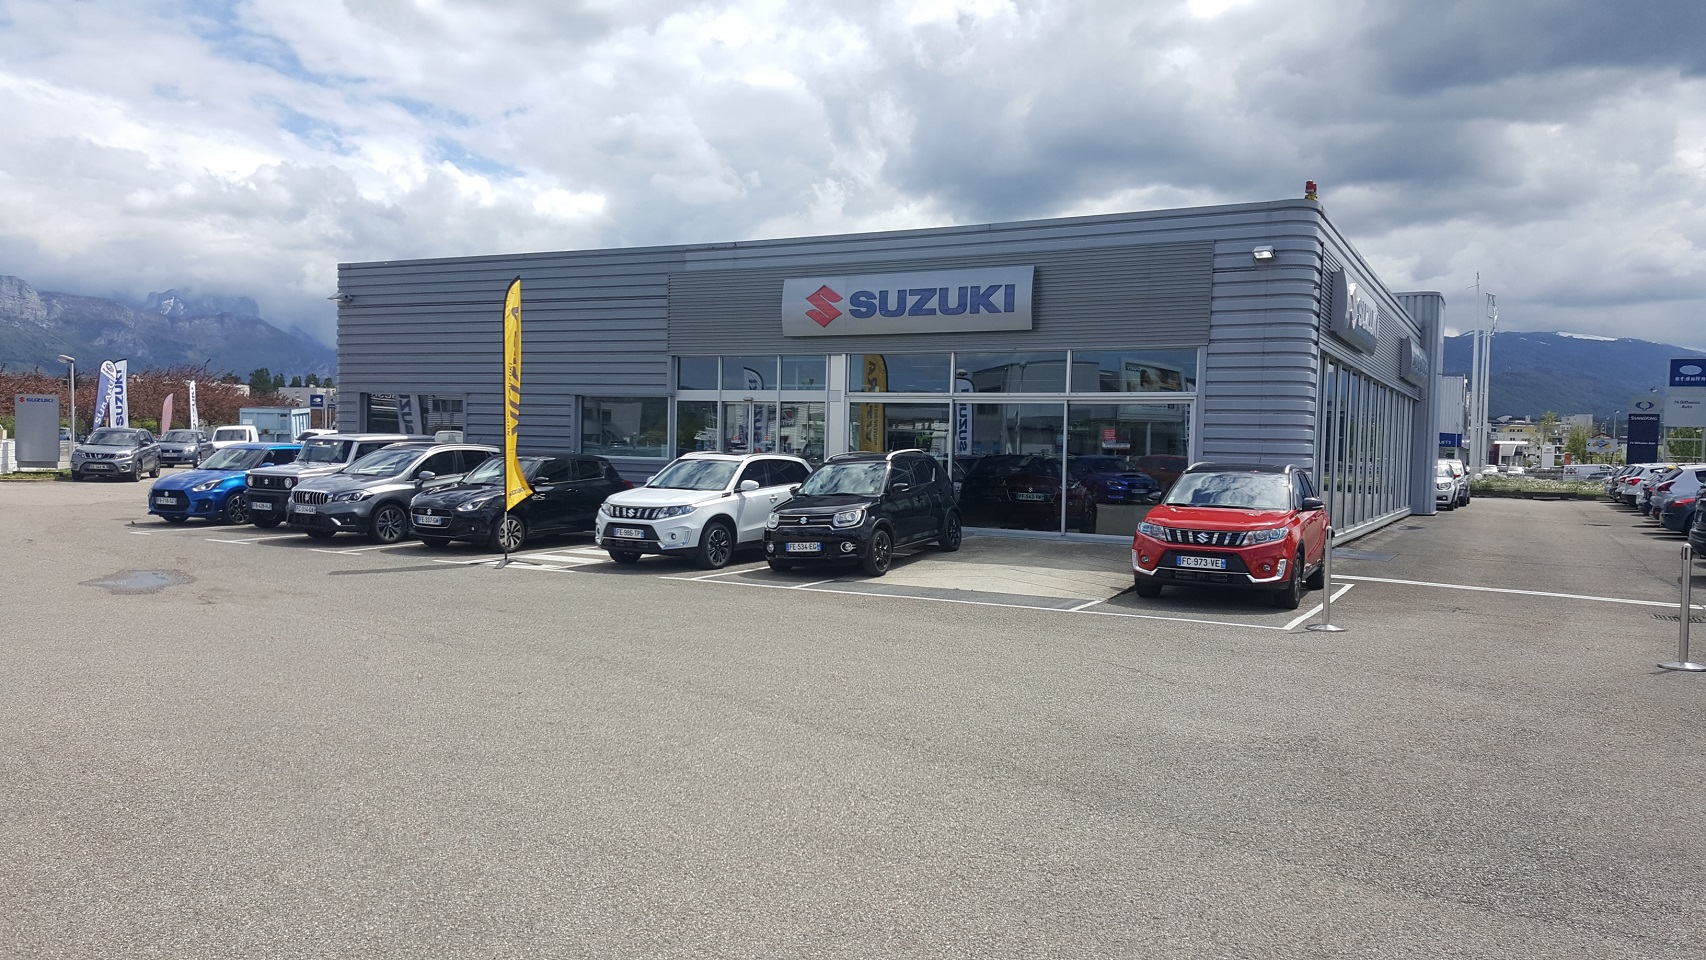 Suzuki Subaru Annecy.jpg